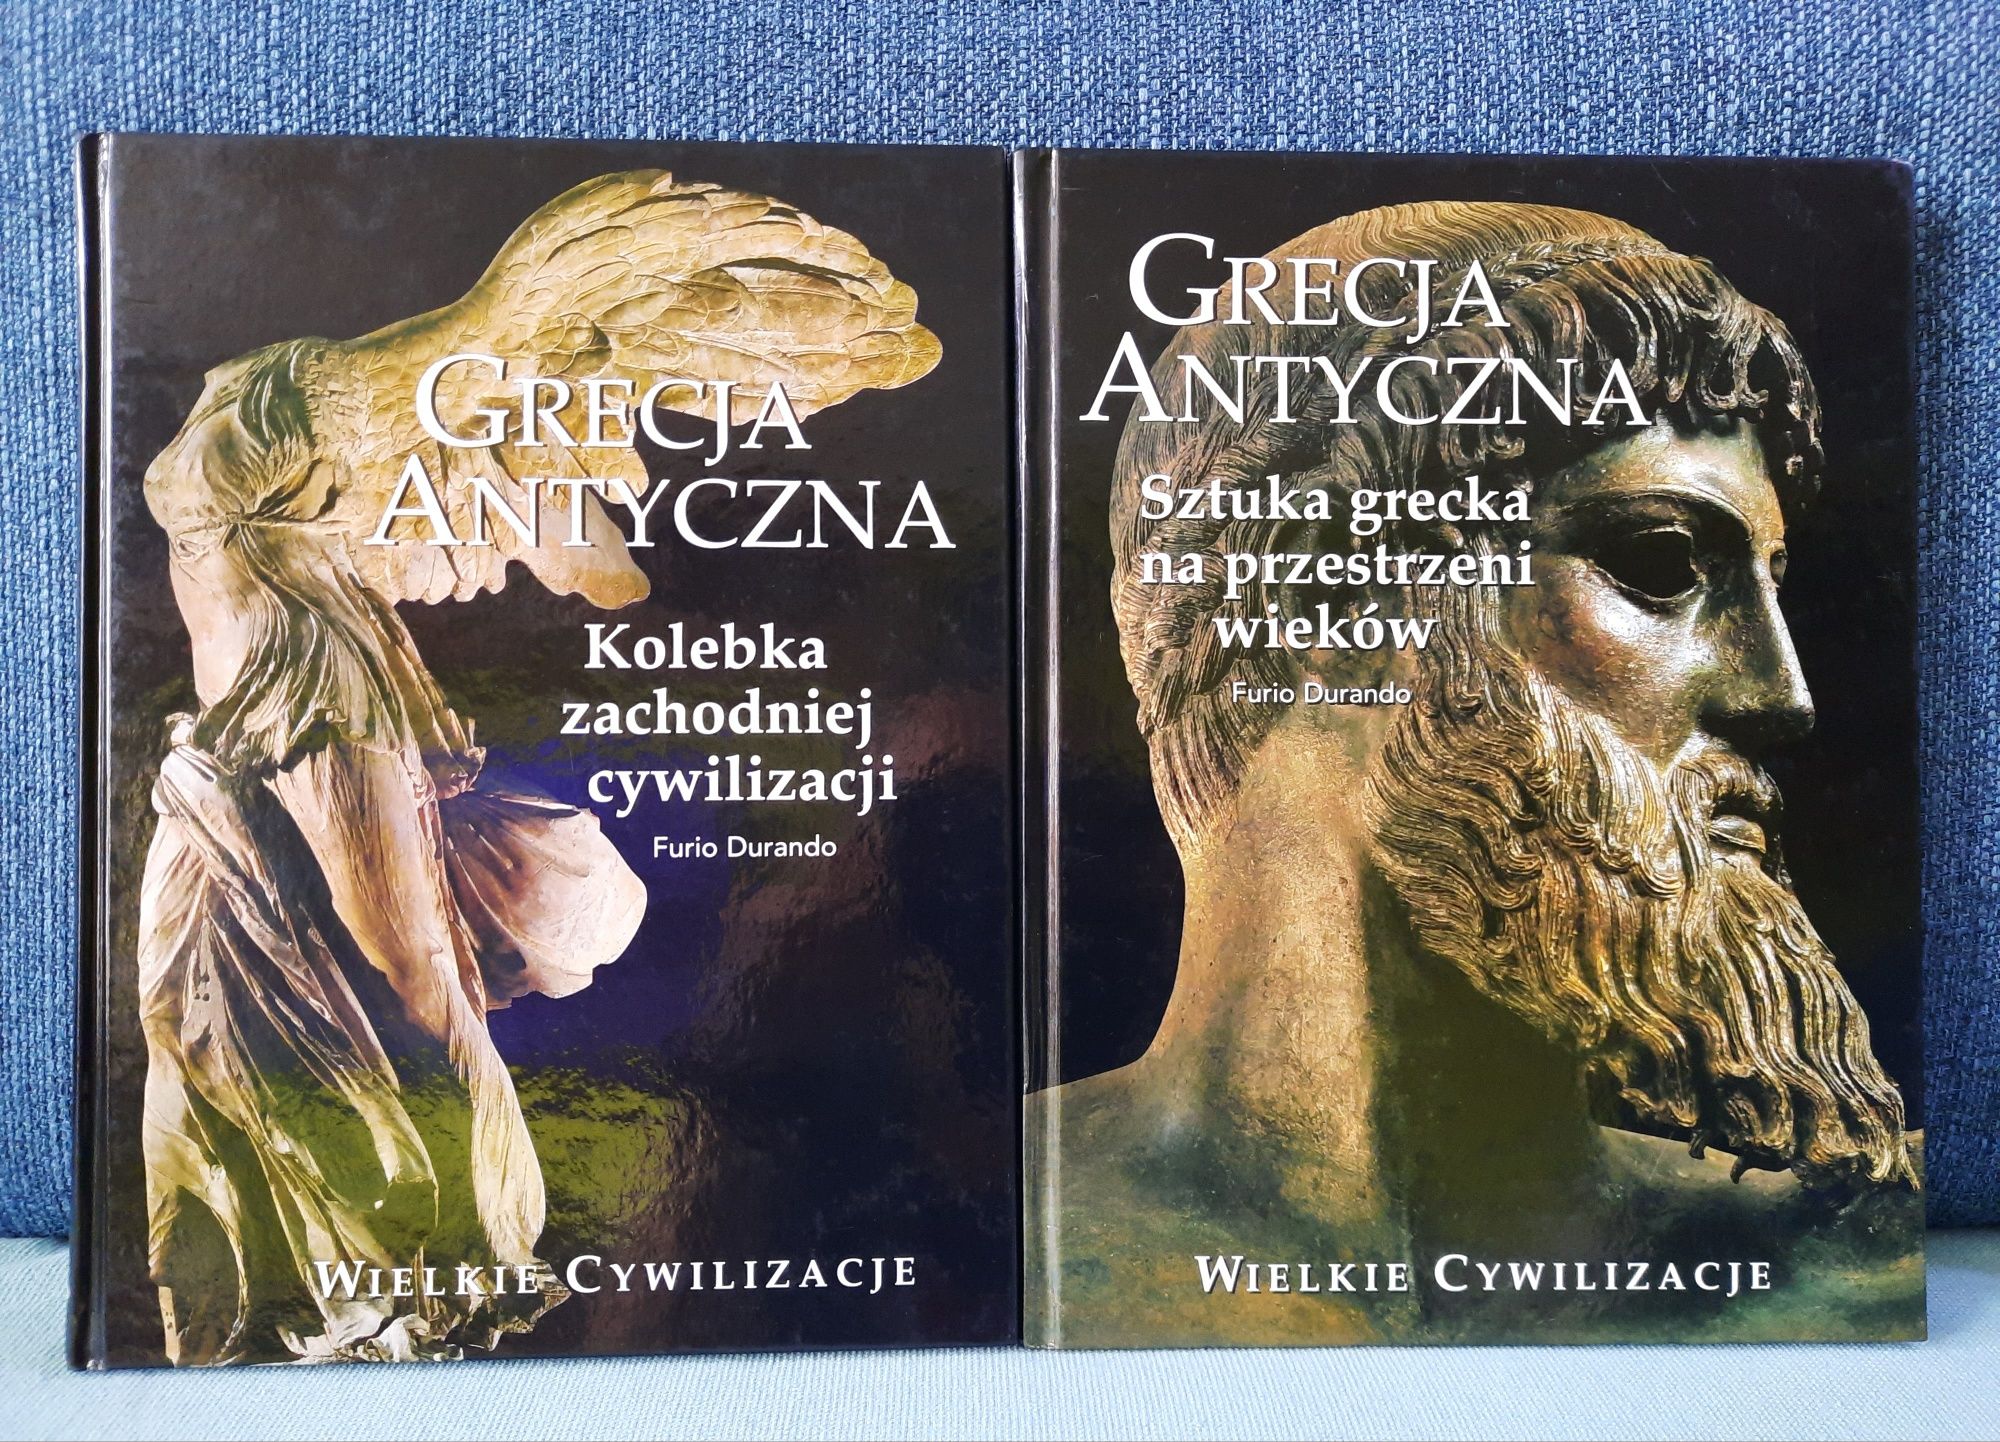 Grecja Antyczna, 2 tomy, seria Wielkie cywilizacje